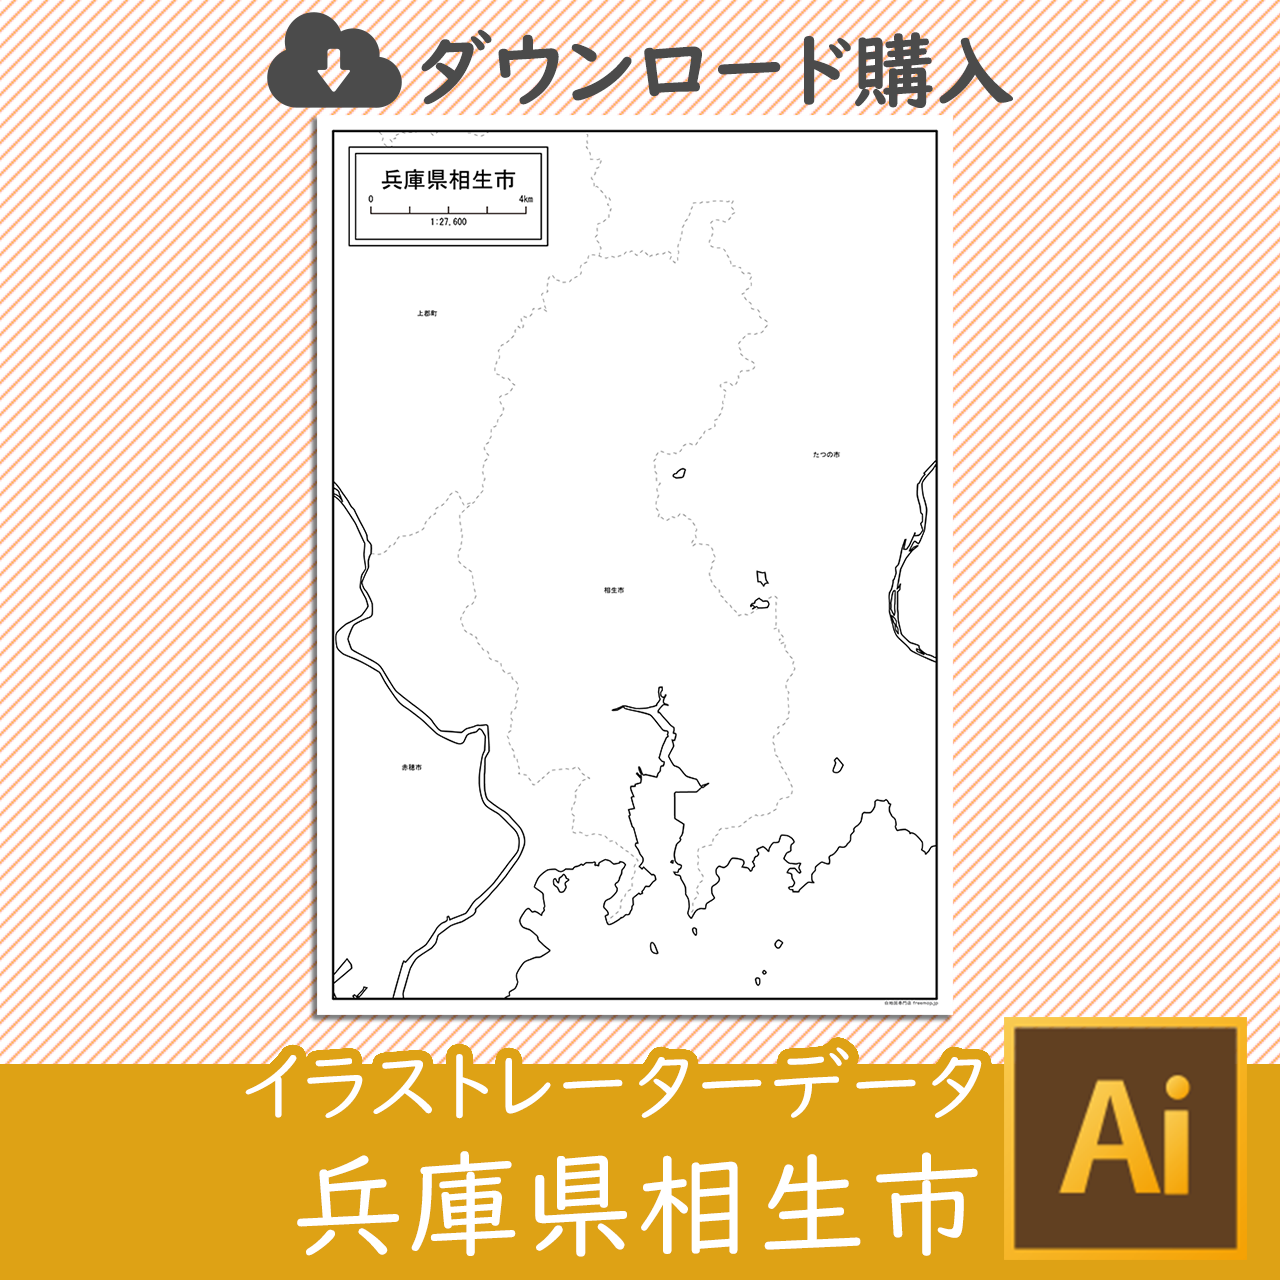 相生市のaiデータのサムネイル画像